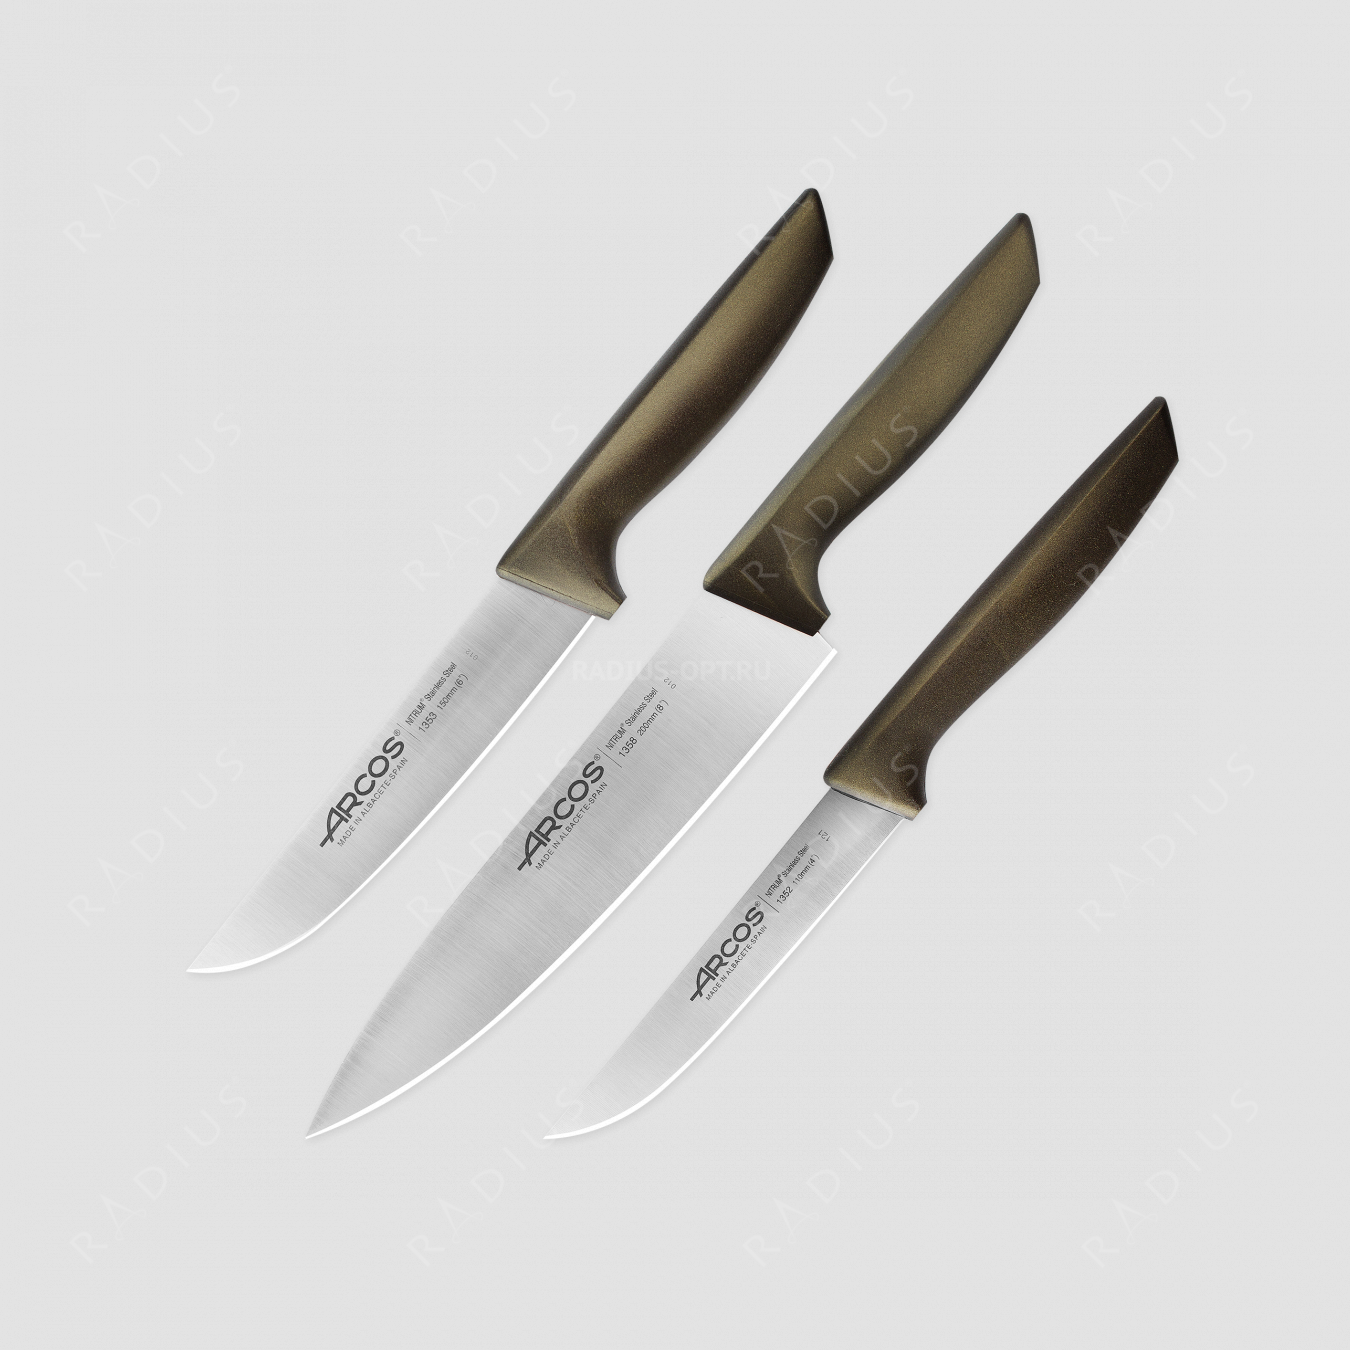 Набор кухонных ножей в коробке, 3 шт (110 мм, 150 мм, 200 мм,) коричневые ручки, серия Niza, ARCOS, Испания